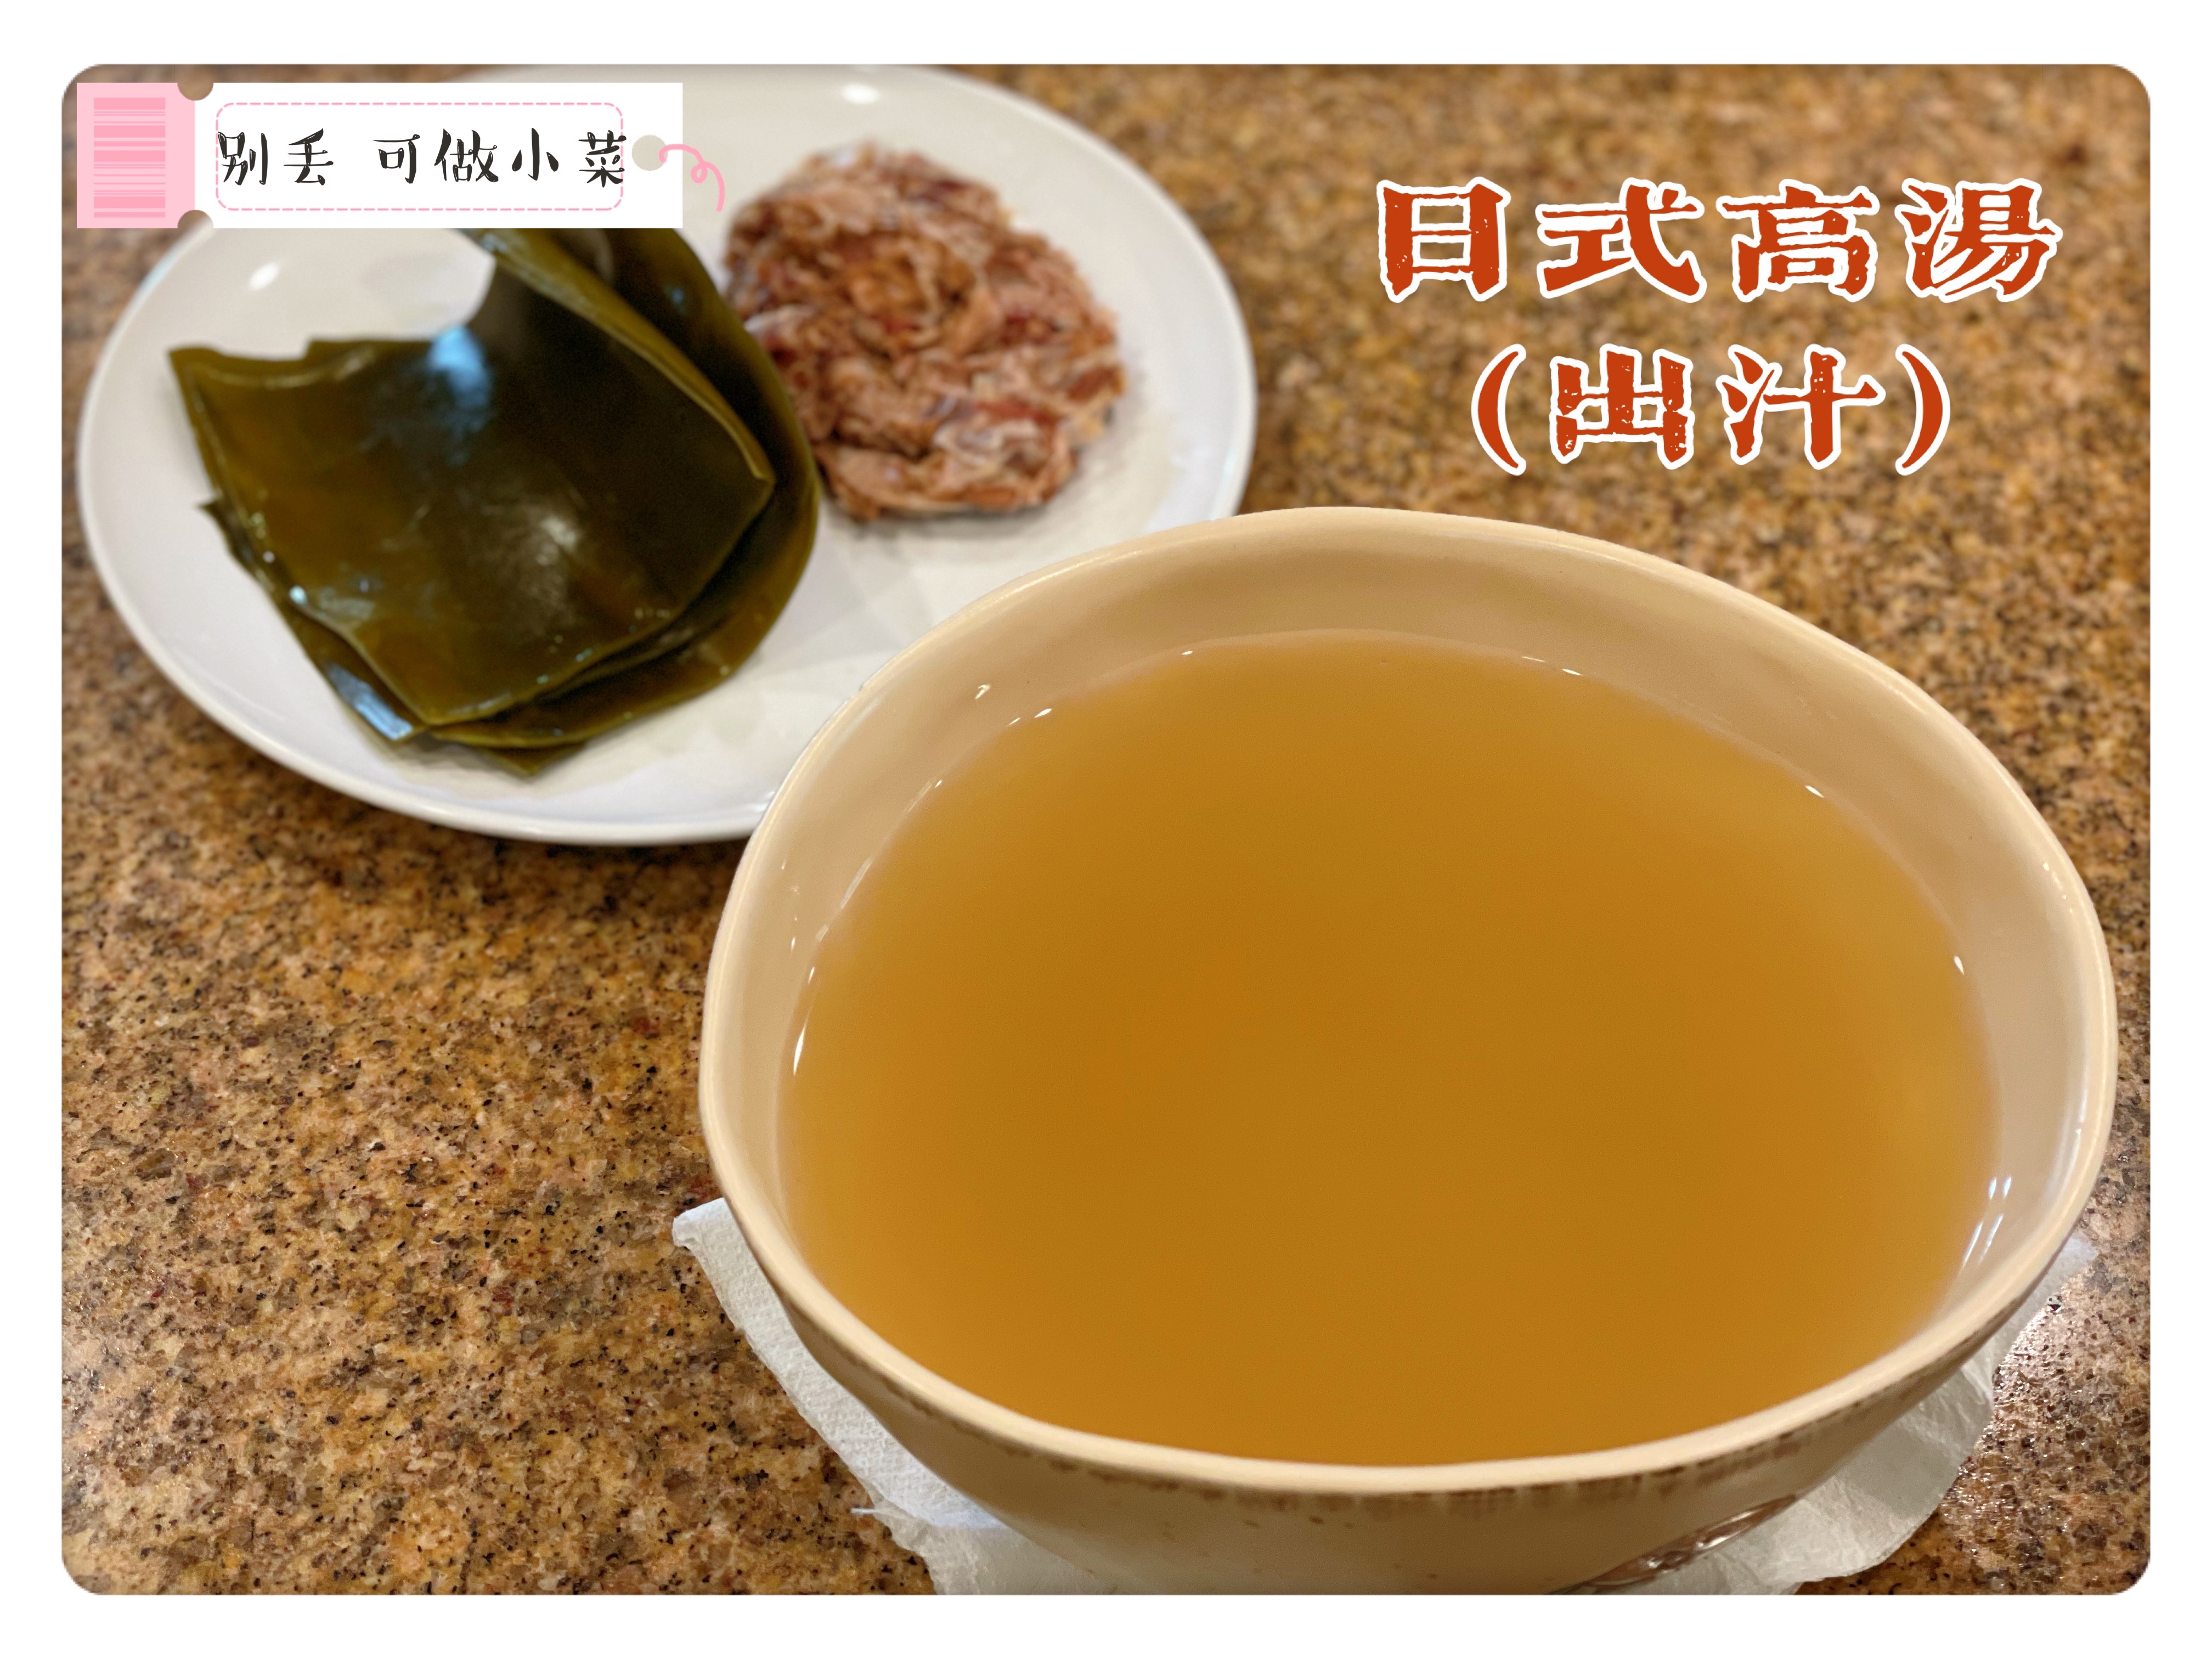 寿喜烧及日式高汤(出汁)的做法 步骤3